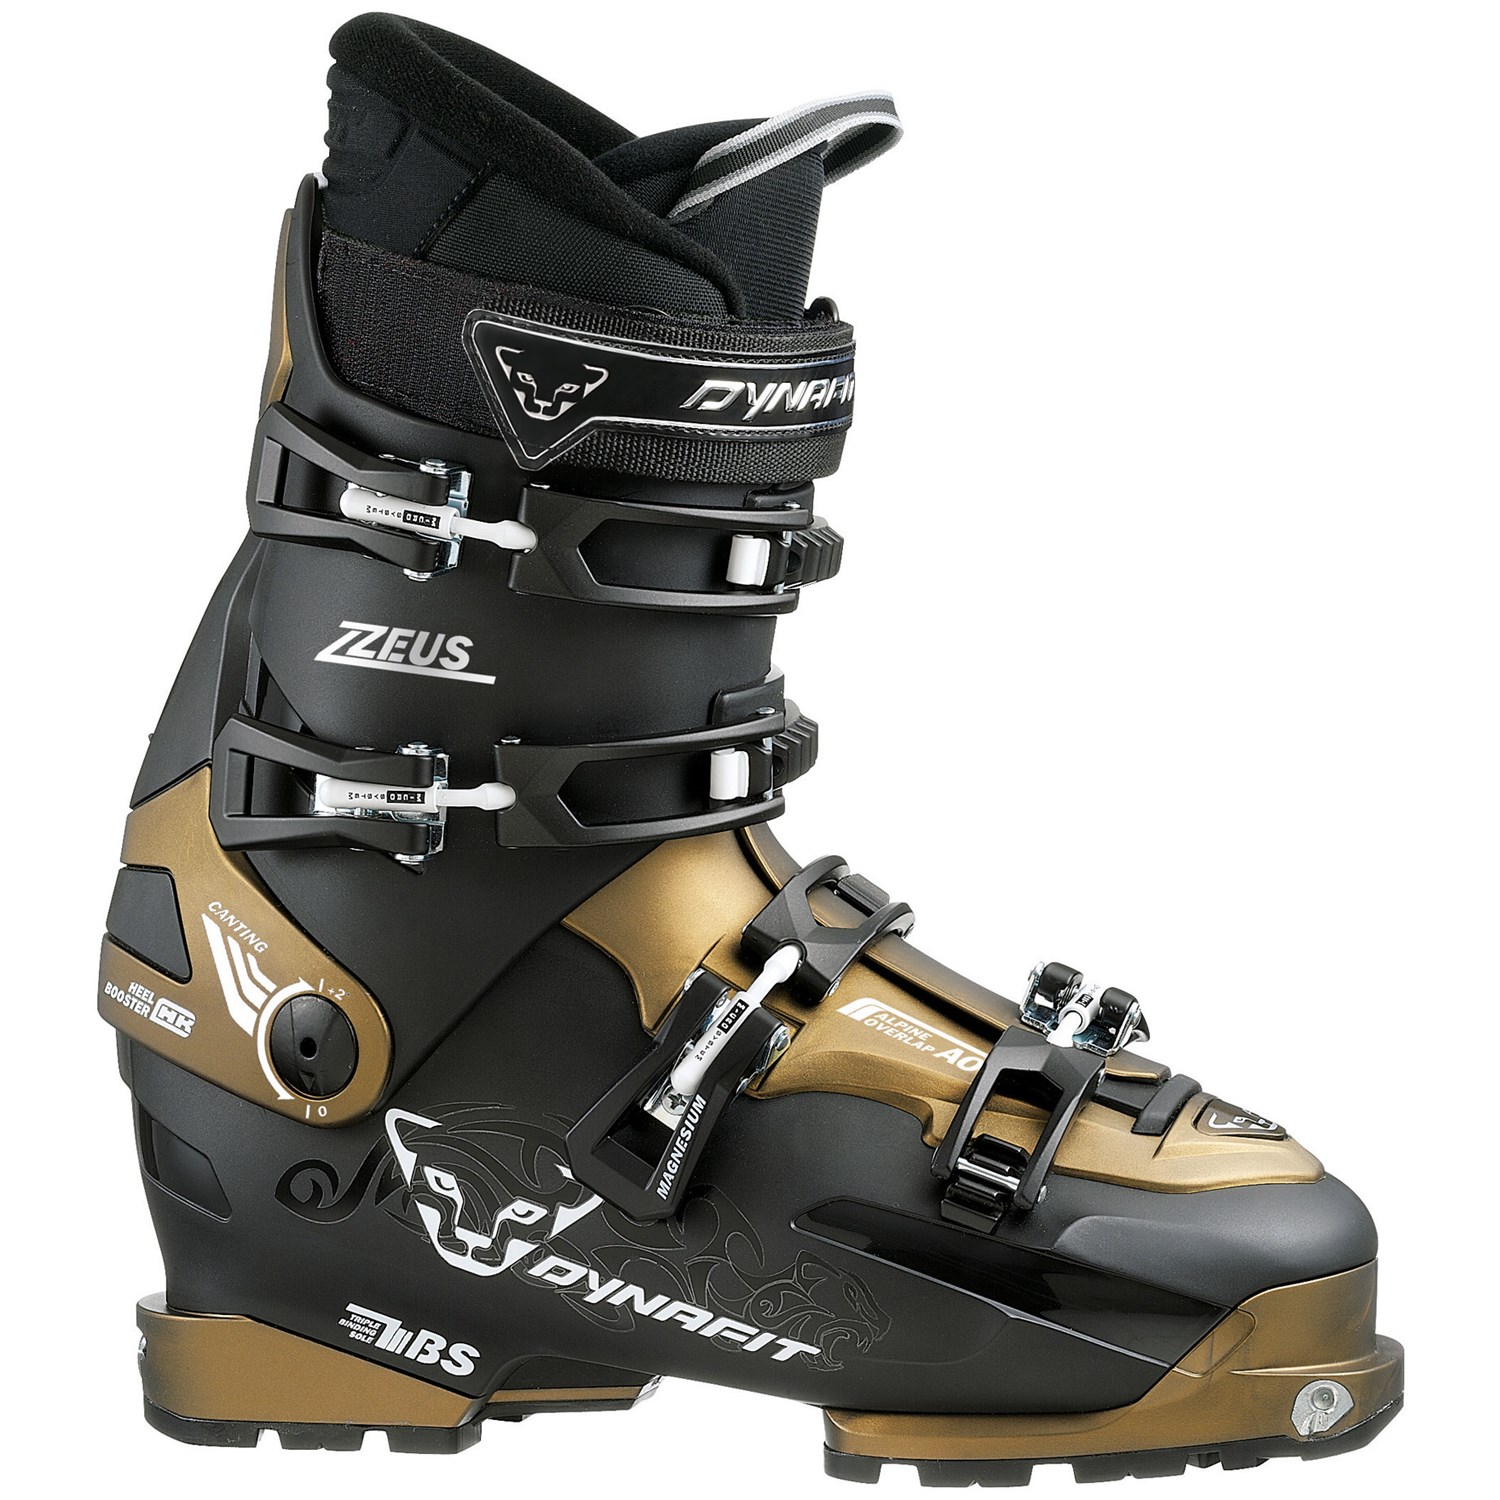 Dynafit Zzeus TF-X Alpine Touring Ski Boots 2011 | evo